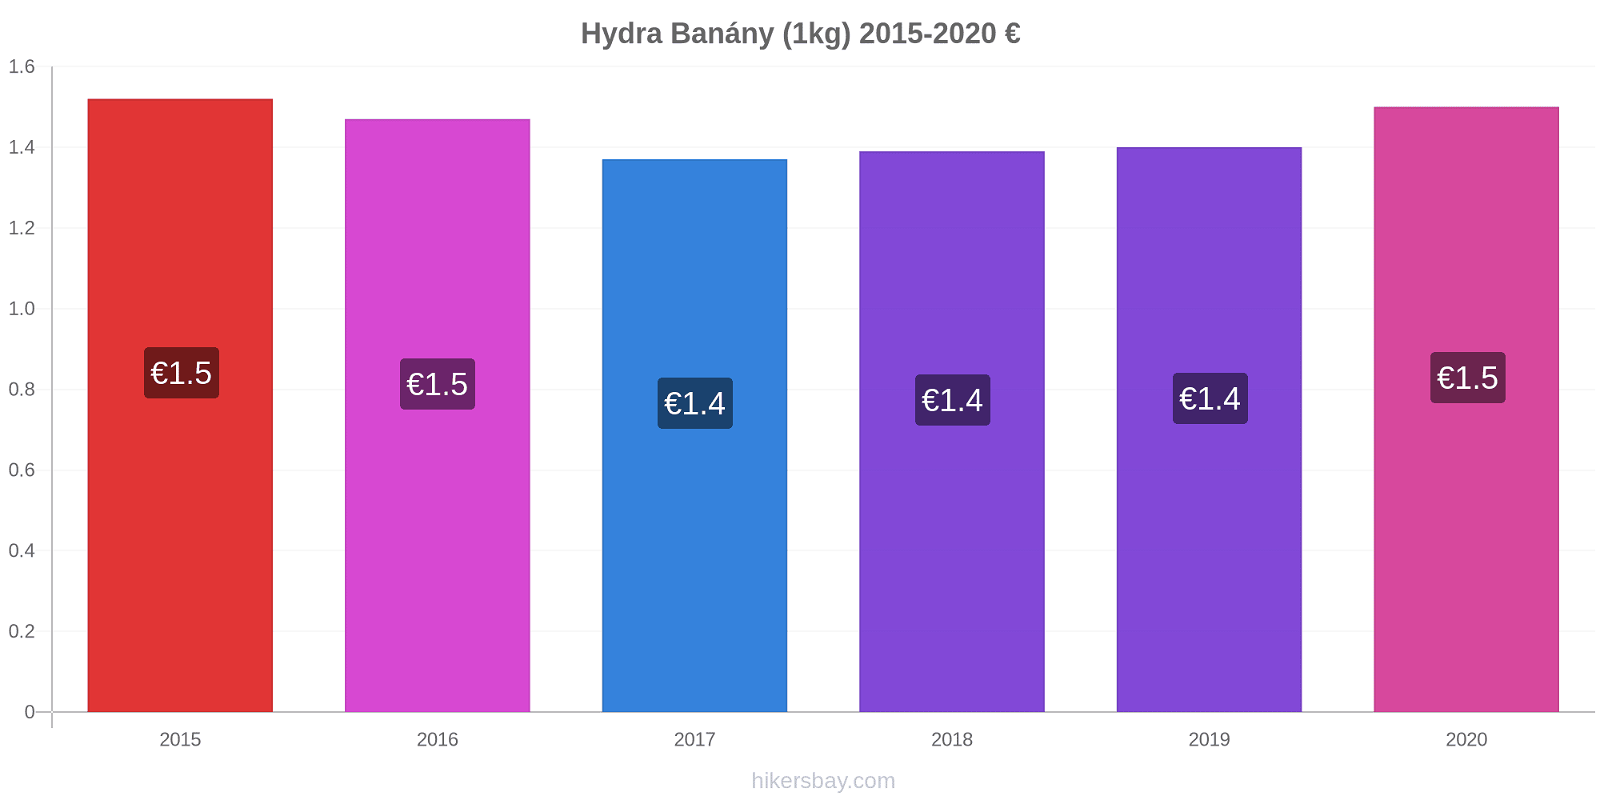 Hydra změny cen Banány (1kg) hikersbay.com